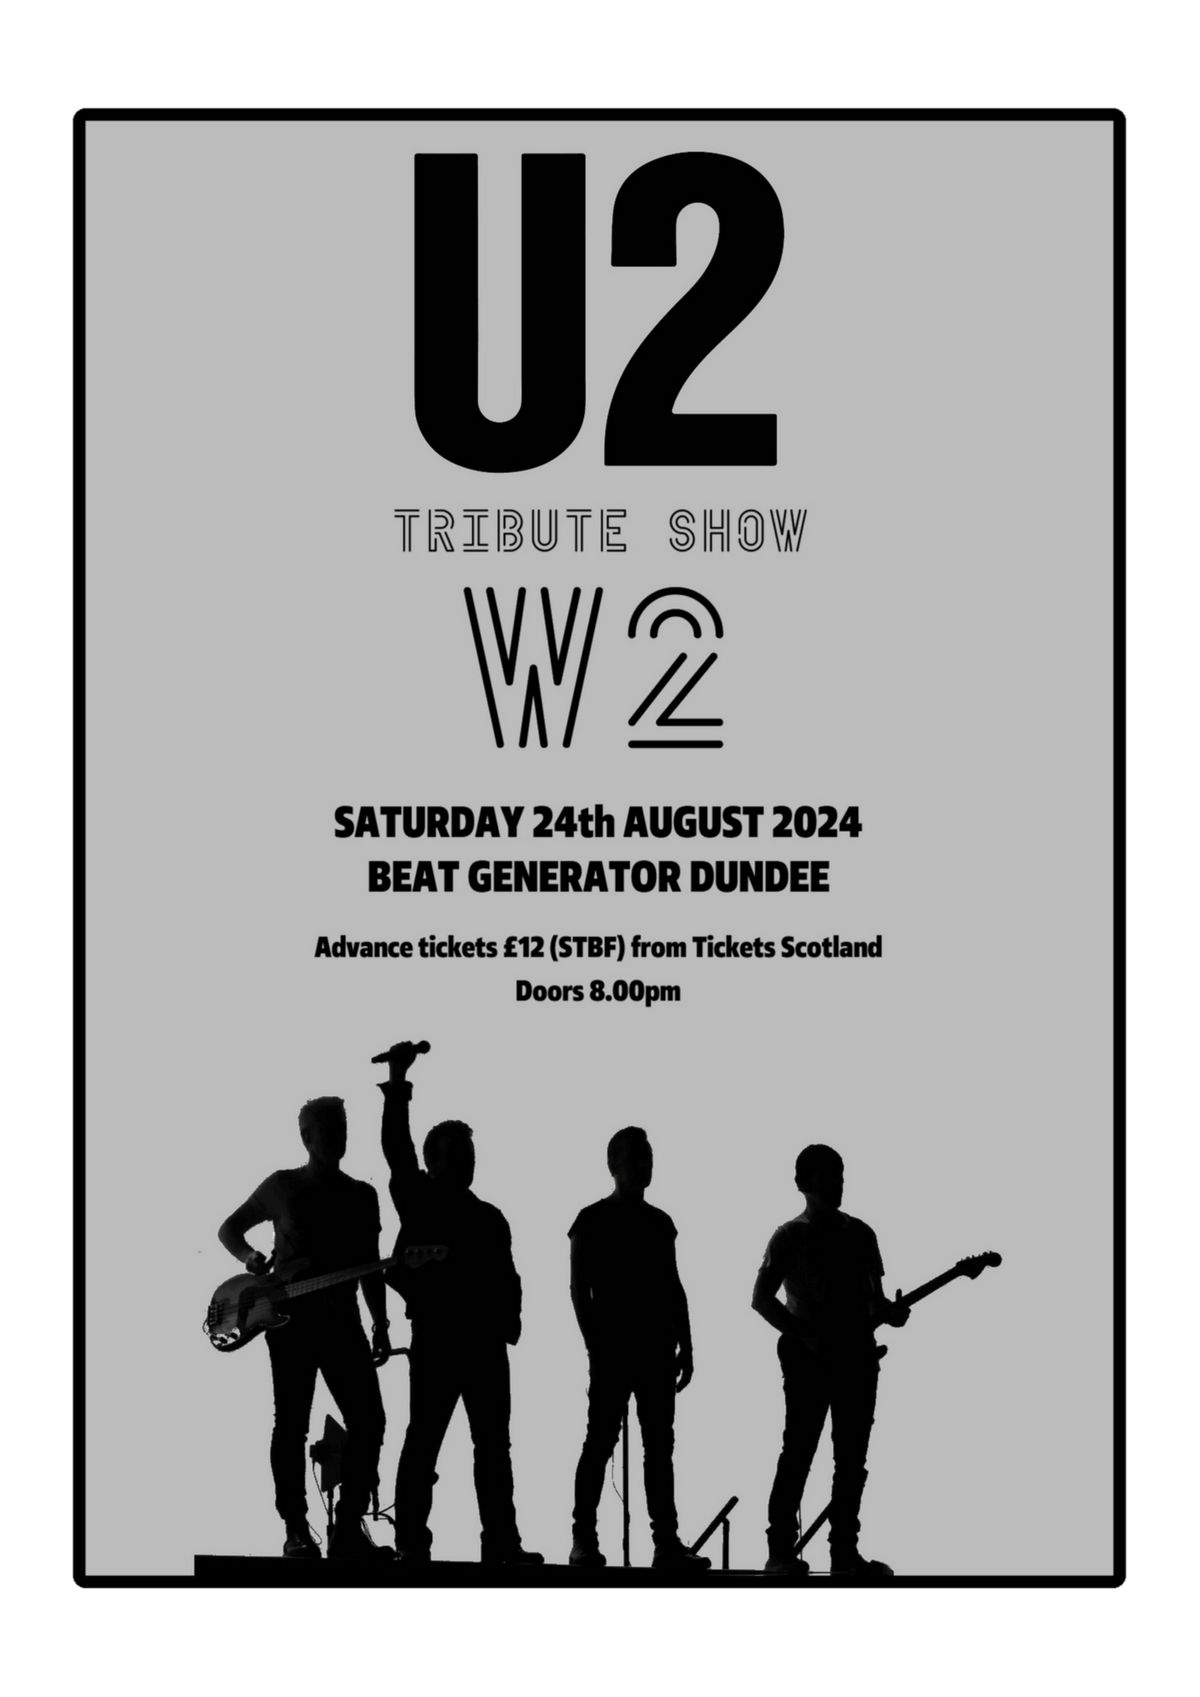 U2 tribute show - W2